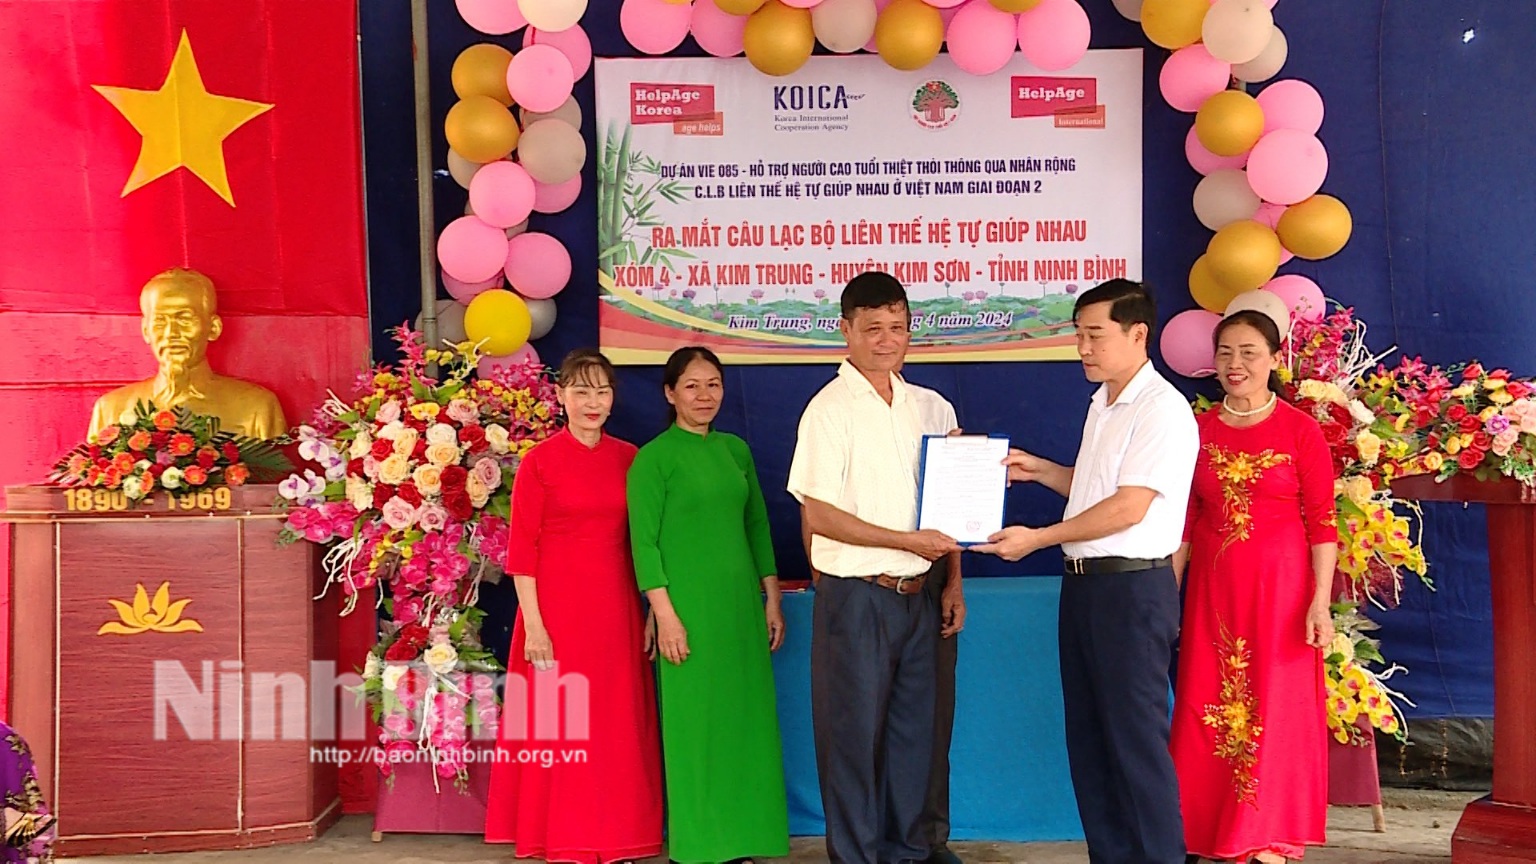 Ra mắt CLB Liên thế hệ tự giúp nhau ở huyện Kim Sơn